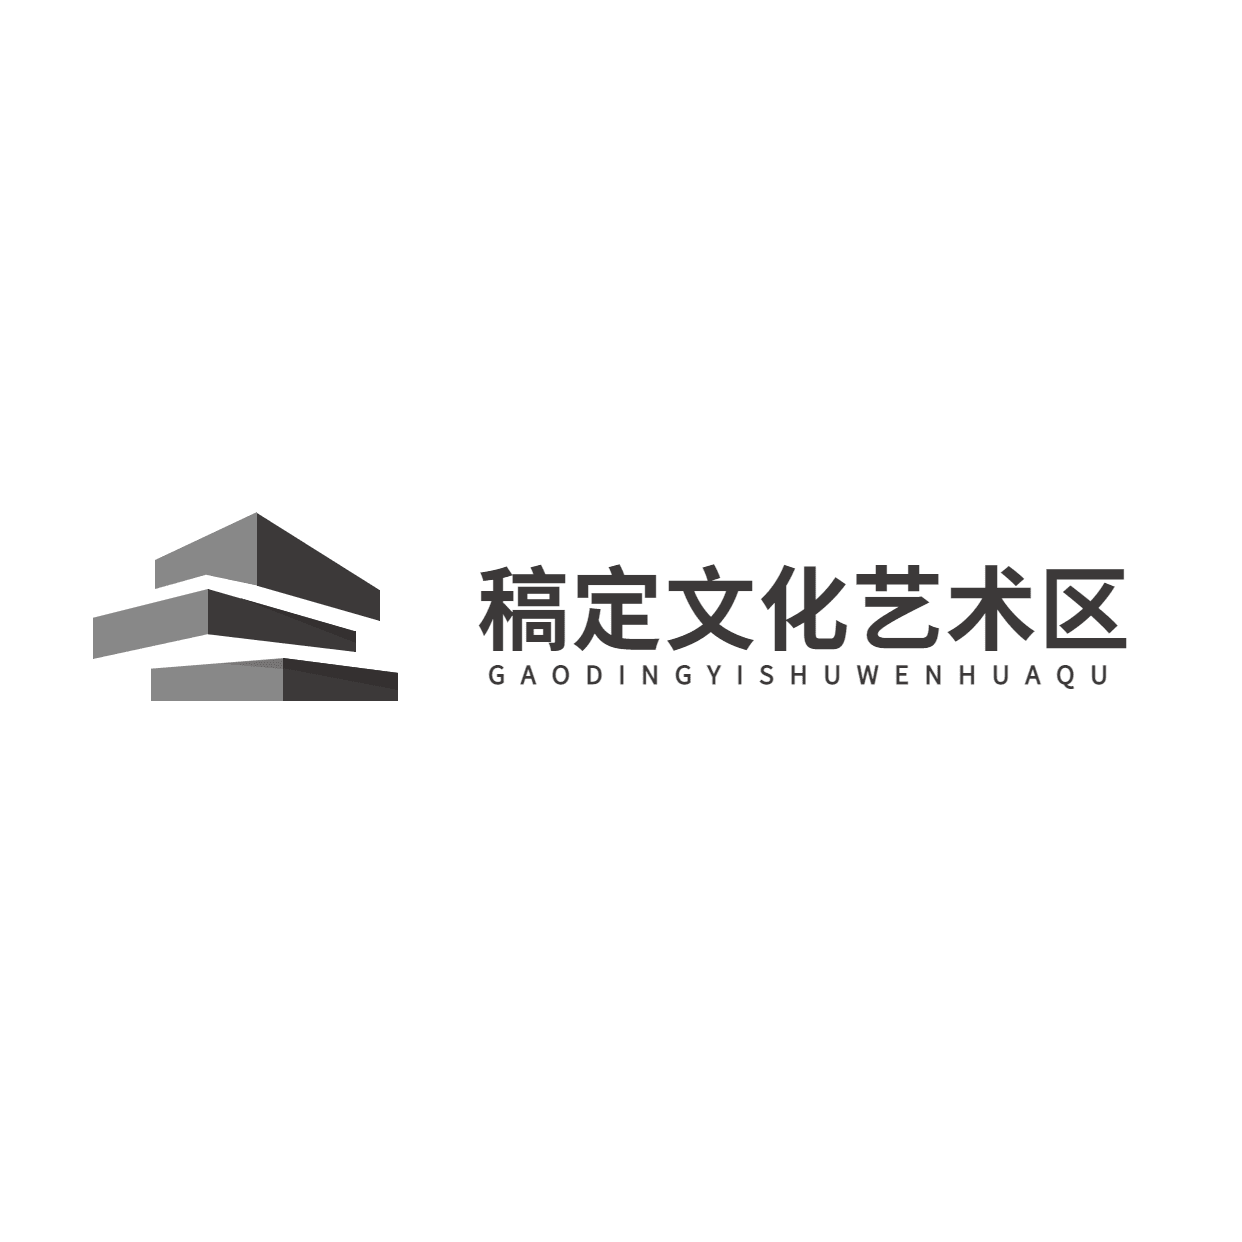 旅游景区文化艺术区图形插画logo